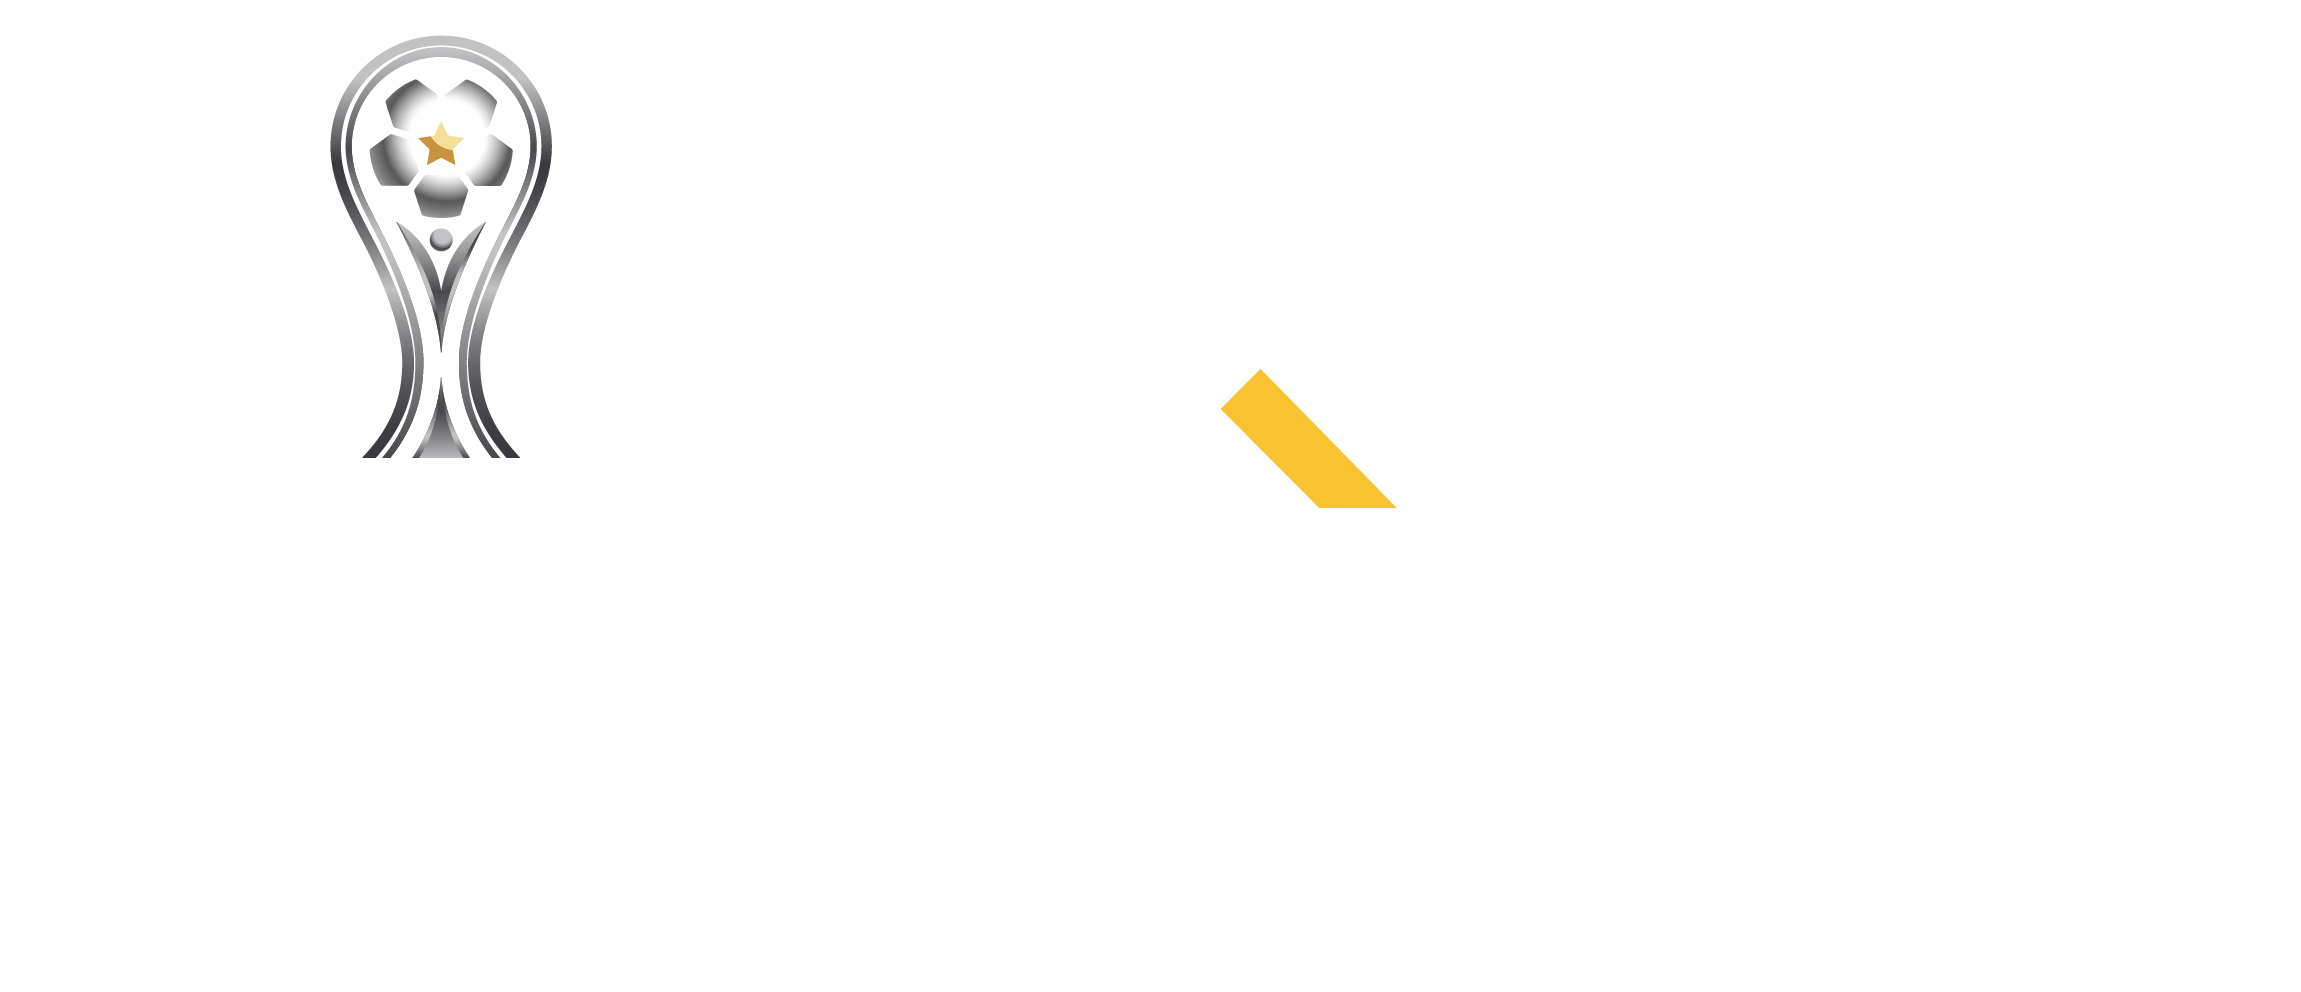 PayRetailers Patrocinador Oficial de la CONMEBOL Sudamericana